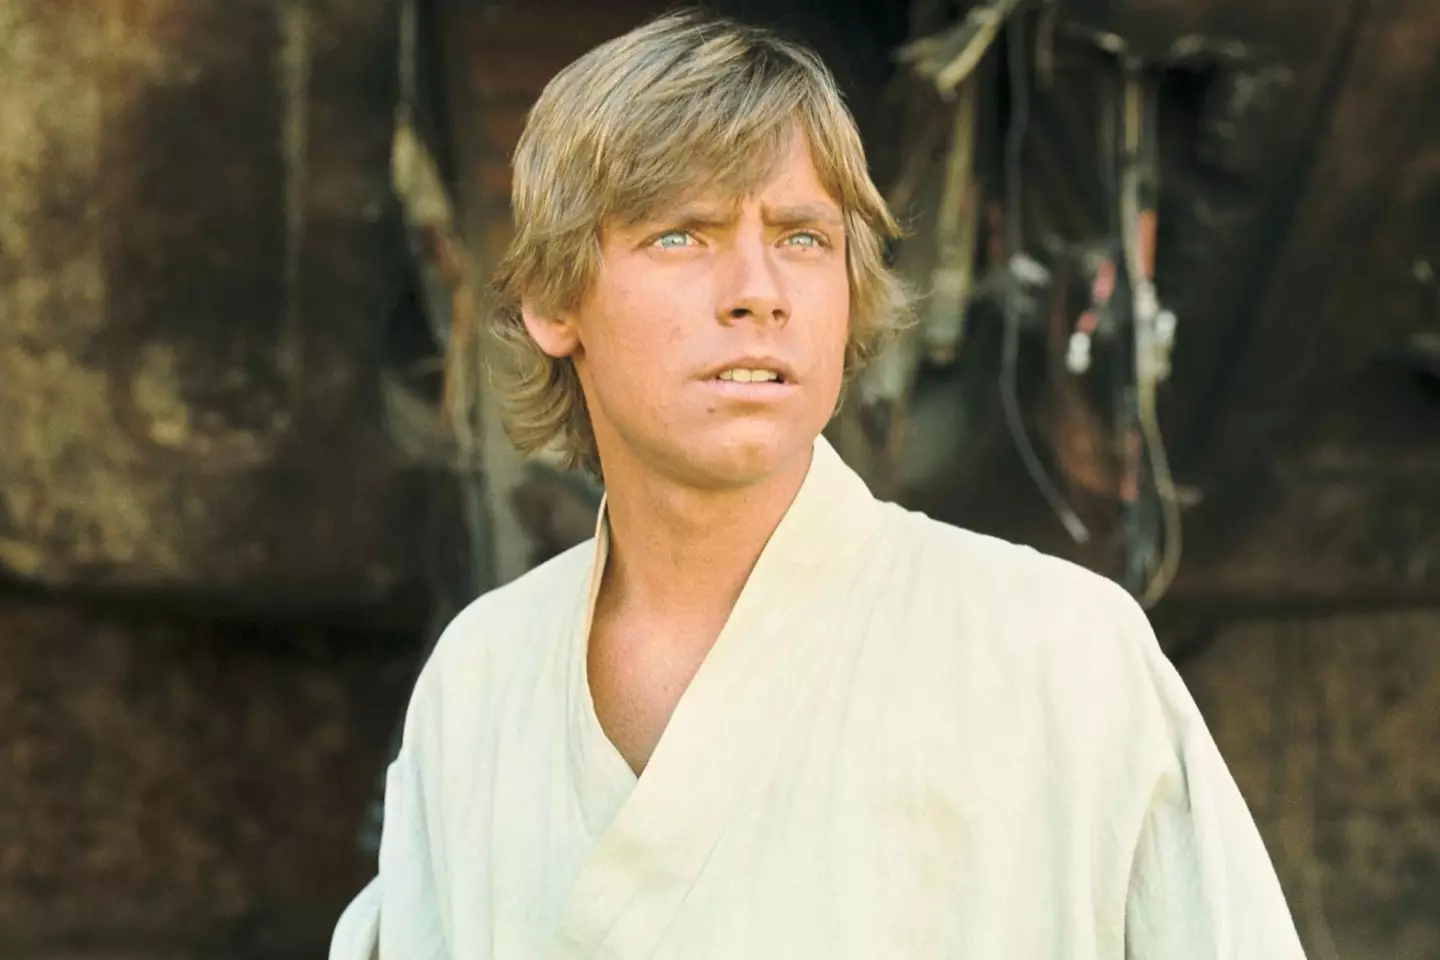 Mark Hamill as Luke Skywalker in the original Star Wars trilogy.